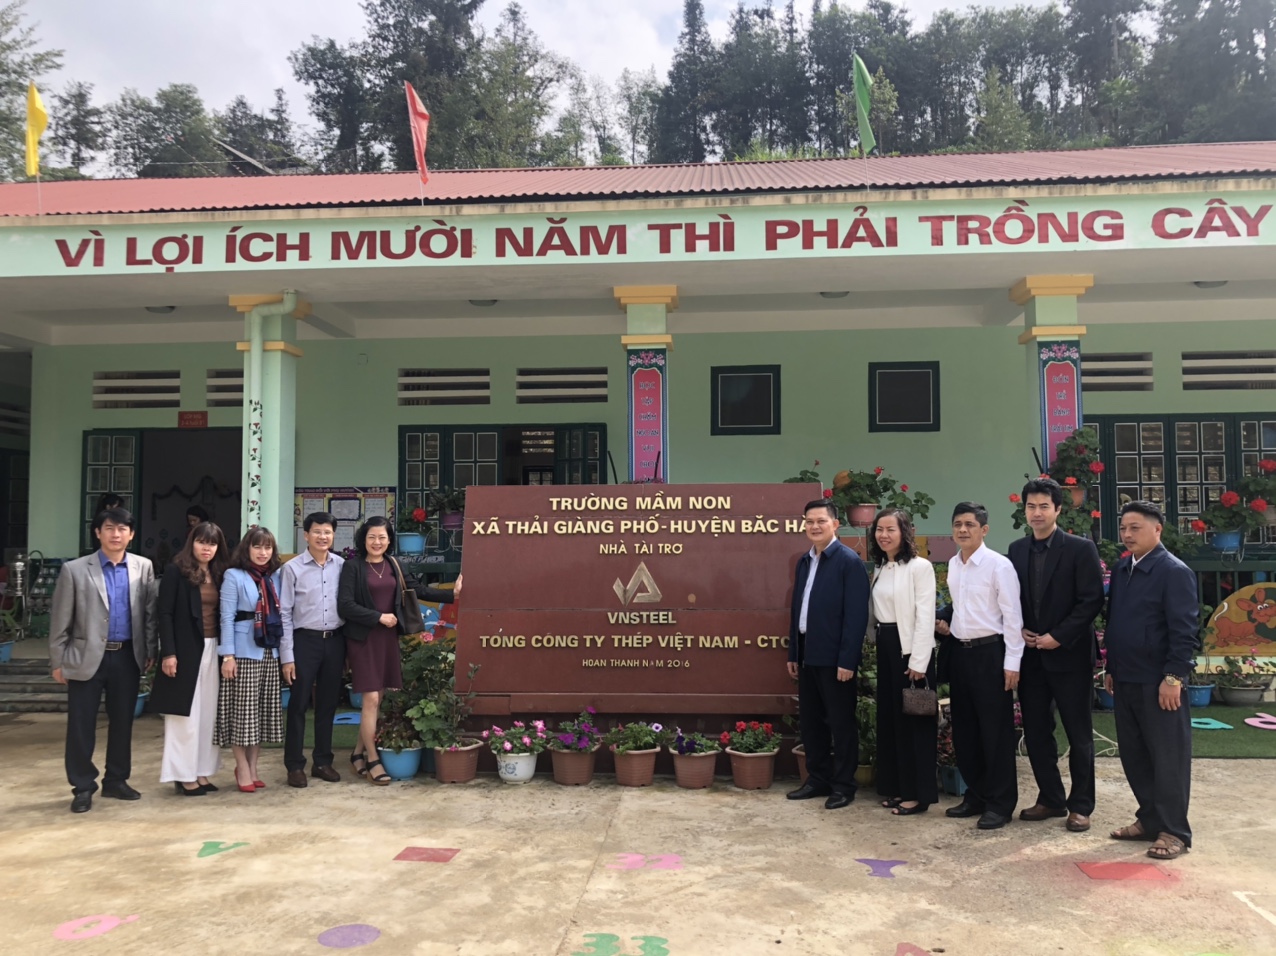 Tổng công ty Thép Việt Nam - CTCP